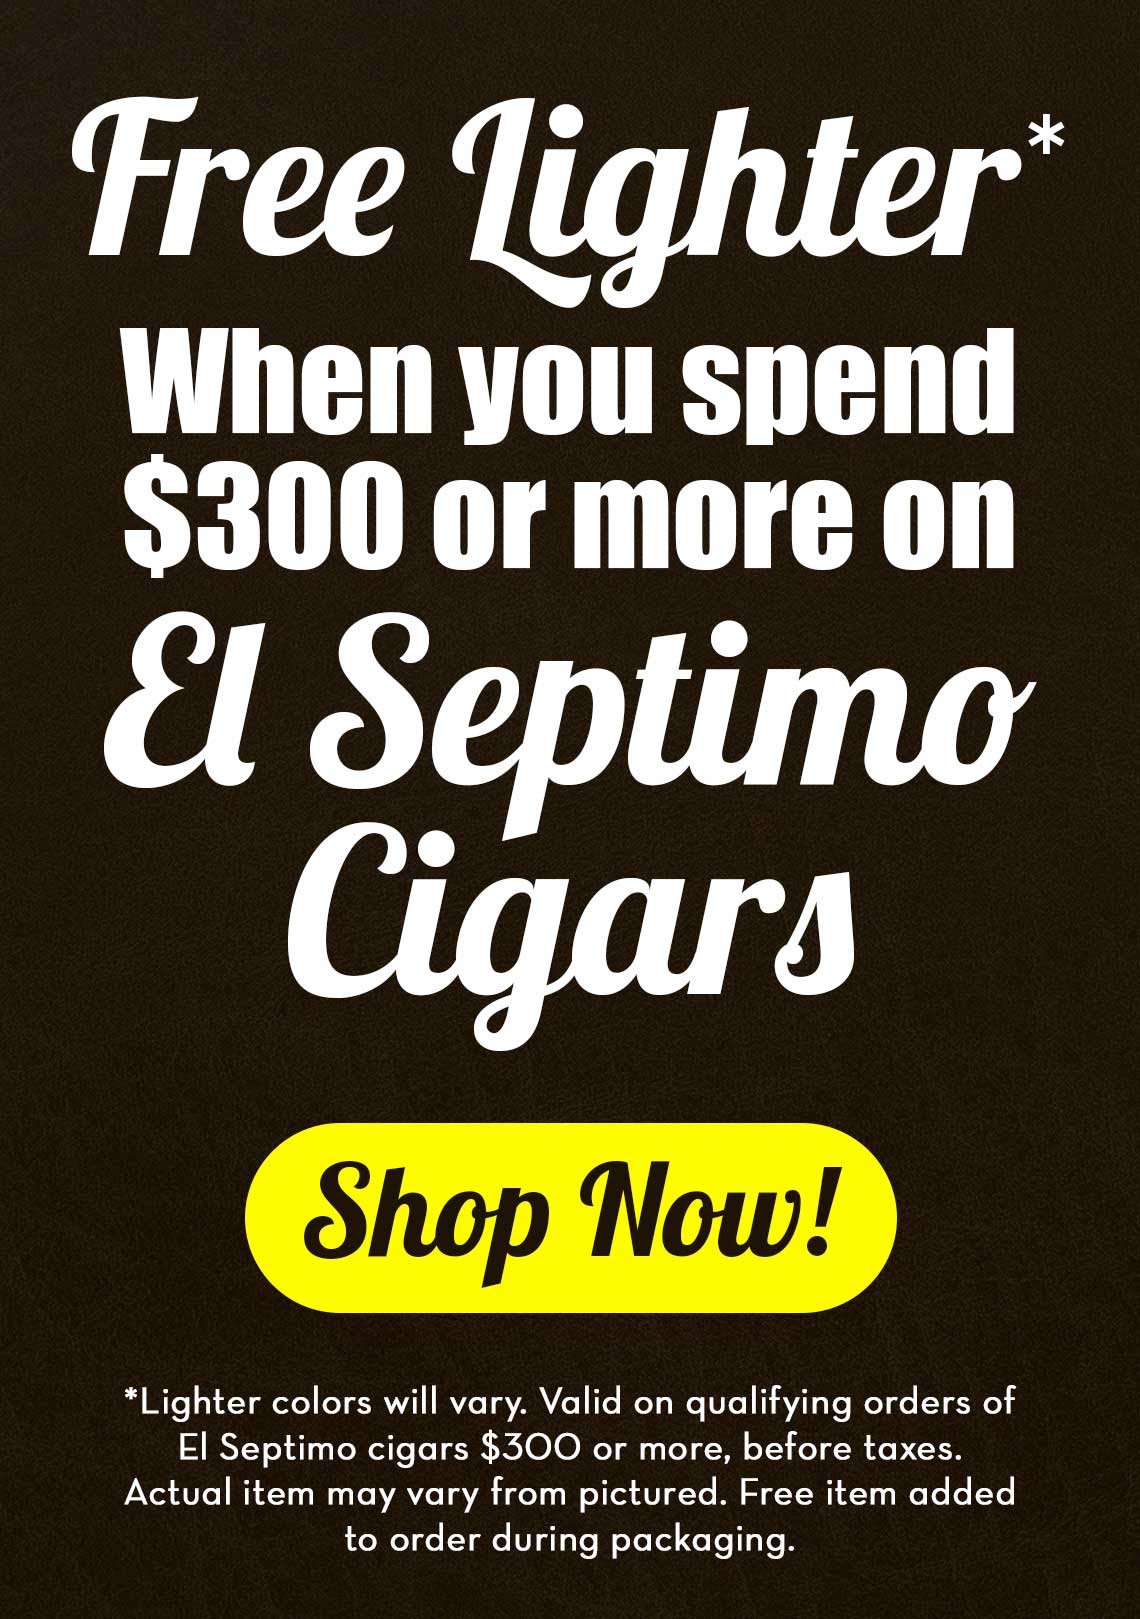 Free El Septimo Lighter Offer